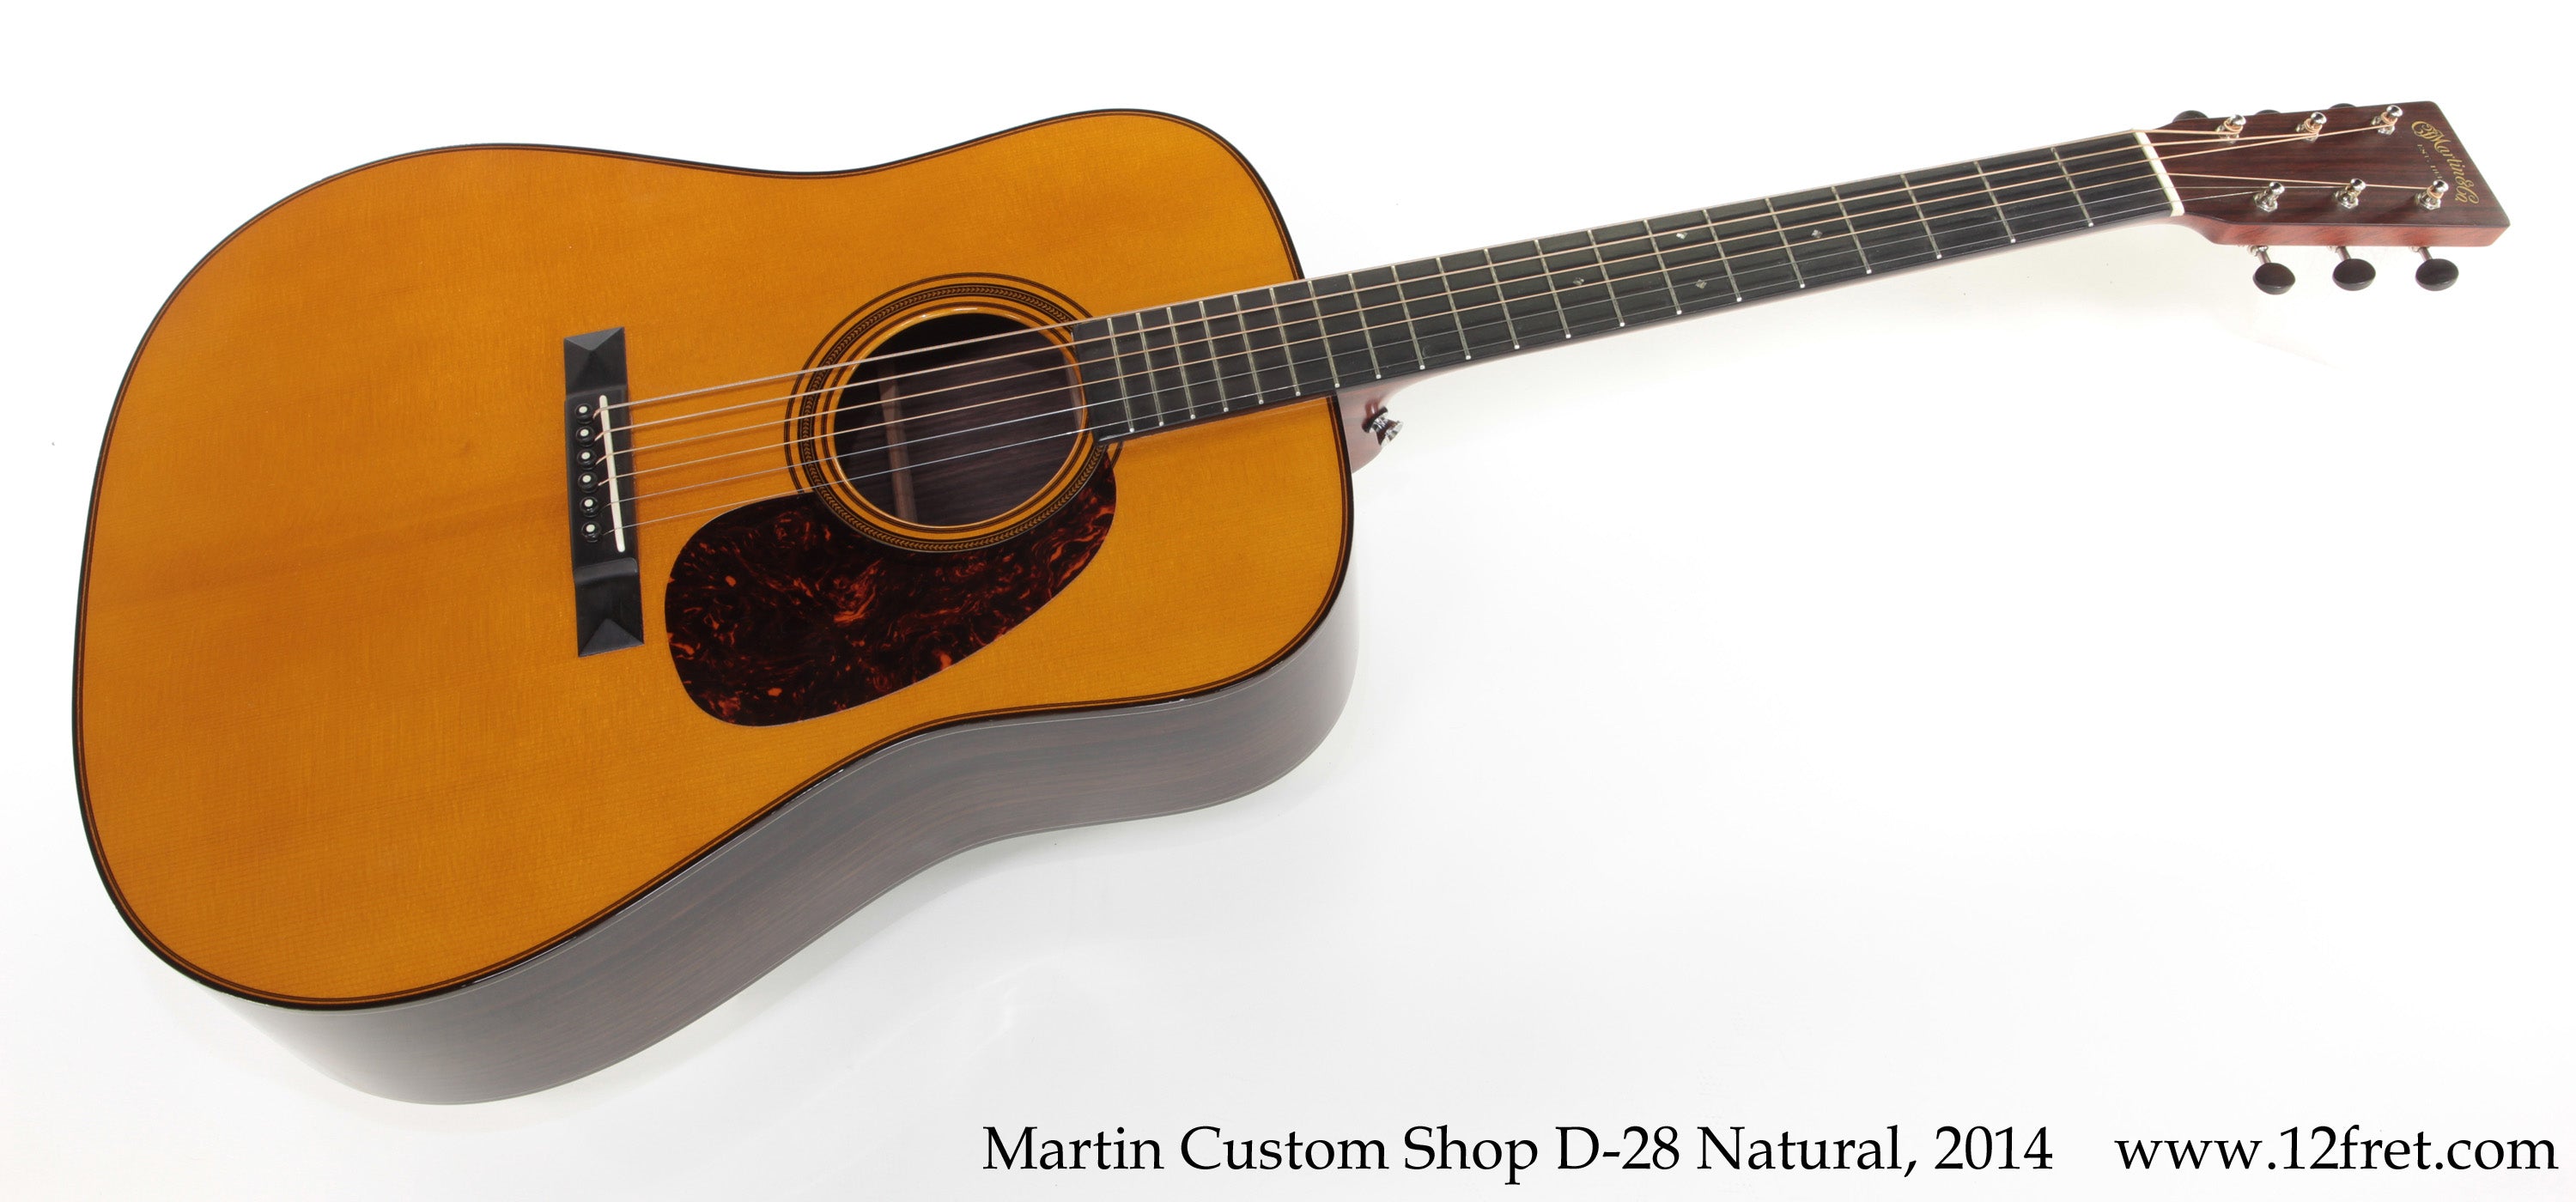 Martin Custom Shop D-28 Natural, 2014 - The Twelfth Fret